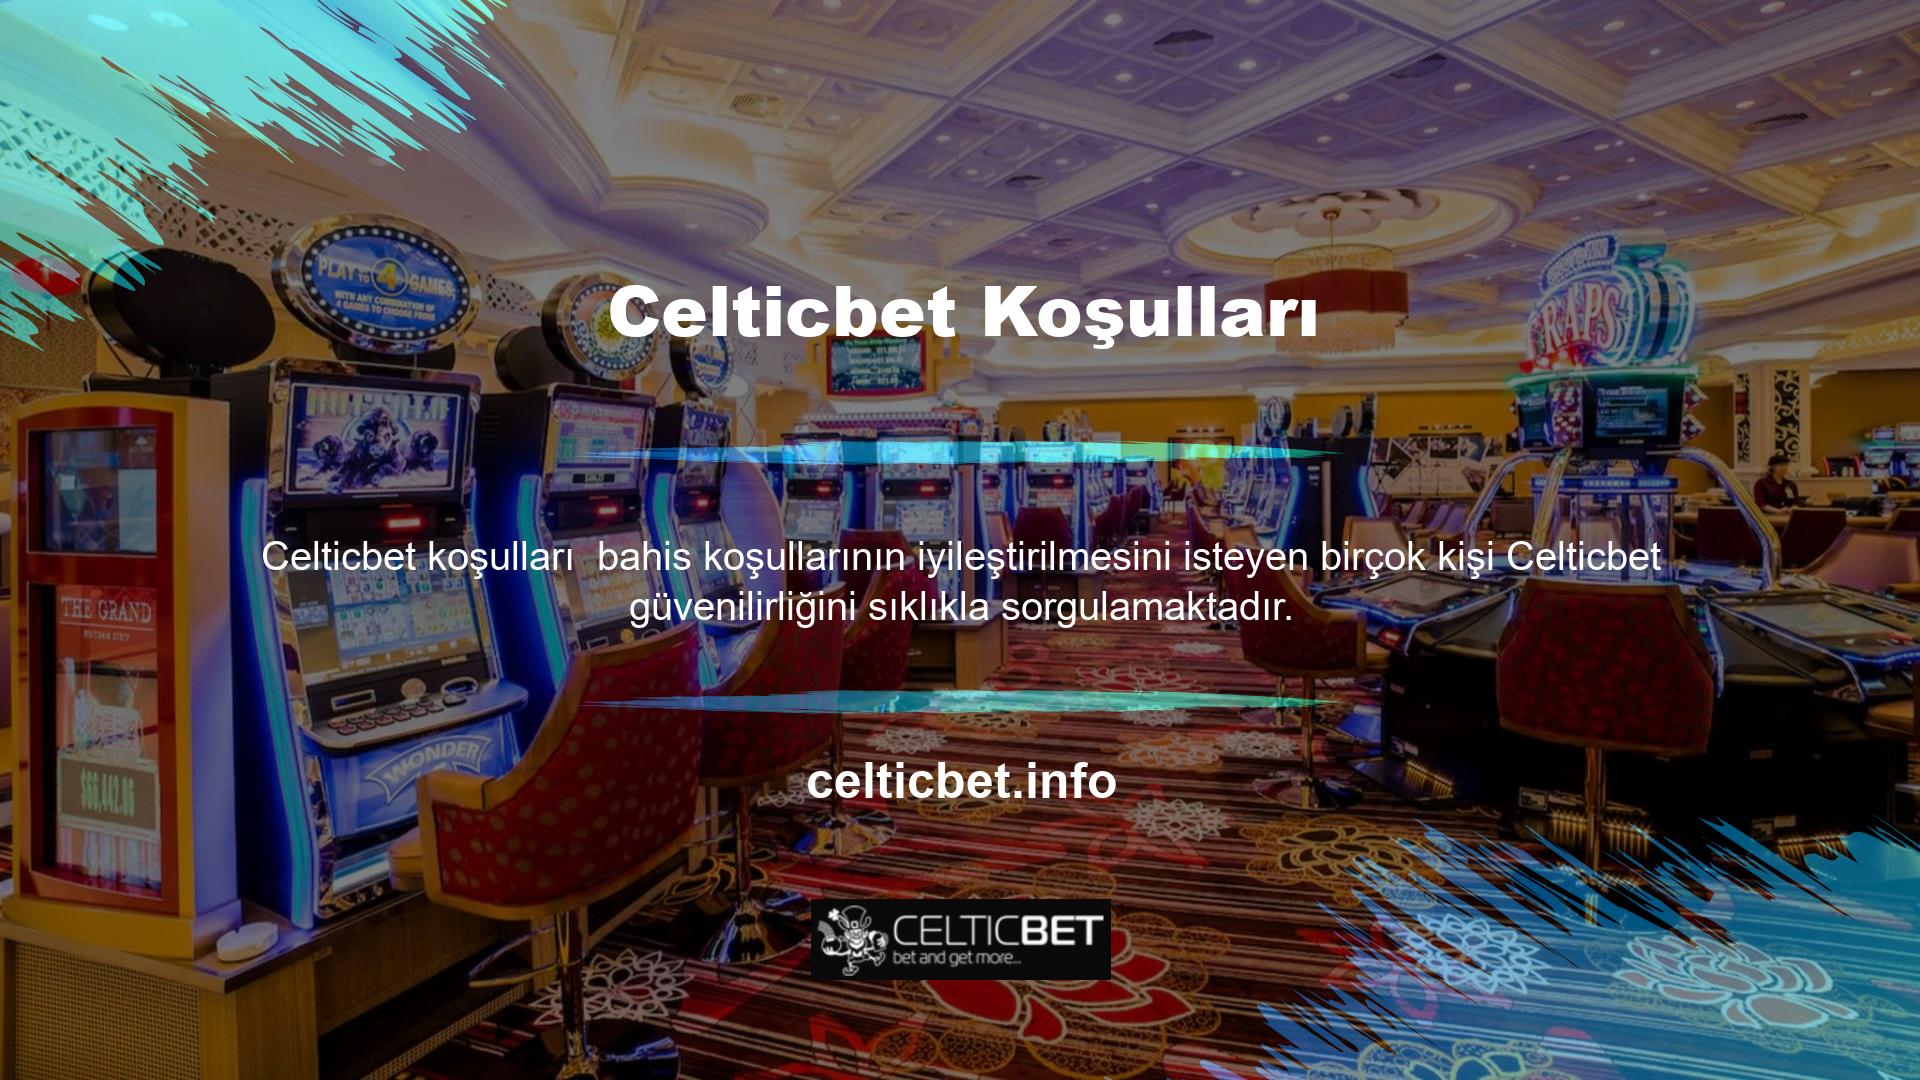 Celticbet, müşterilerine uygun oranlar ve çok çeşitli bahis seçenekleri sunan, çevrimiçi bahisler için popüler bir destinasyondur